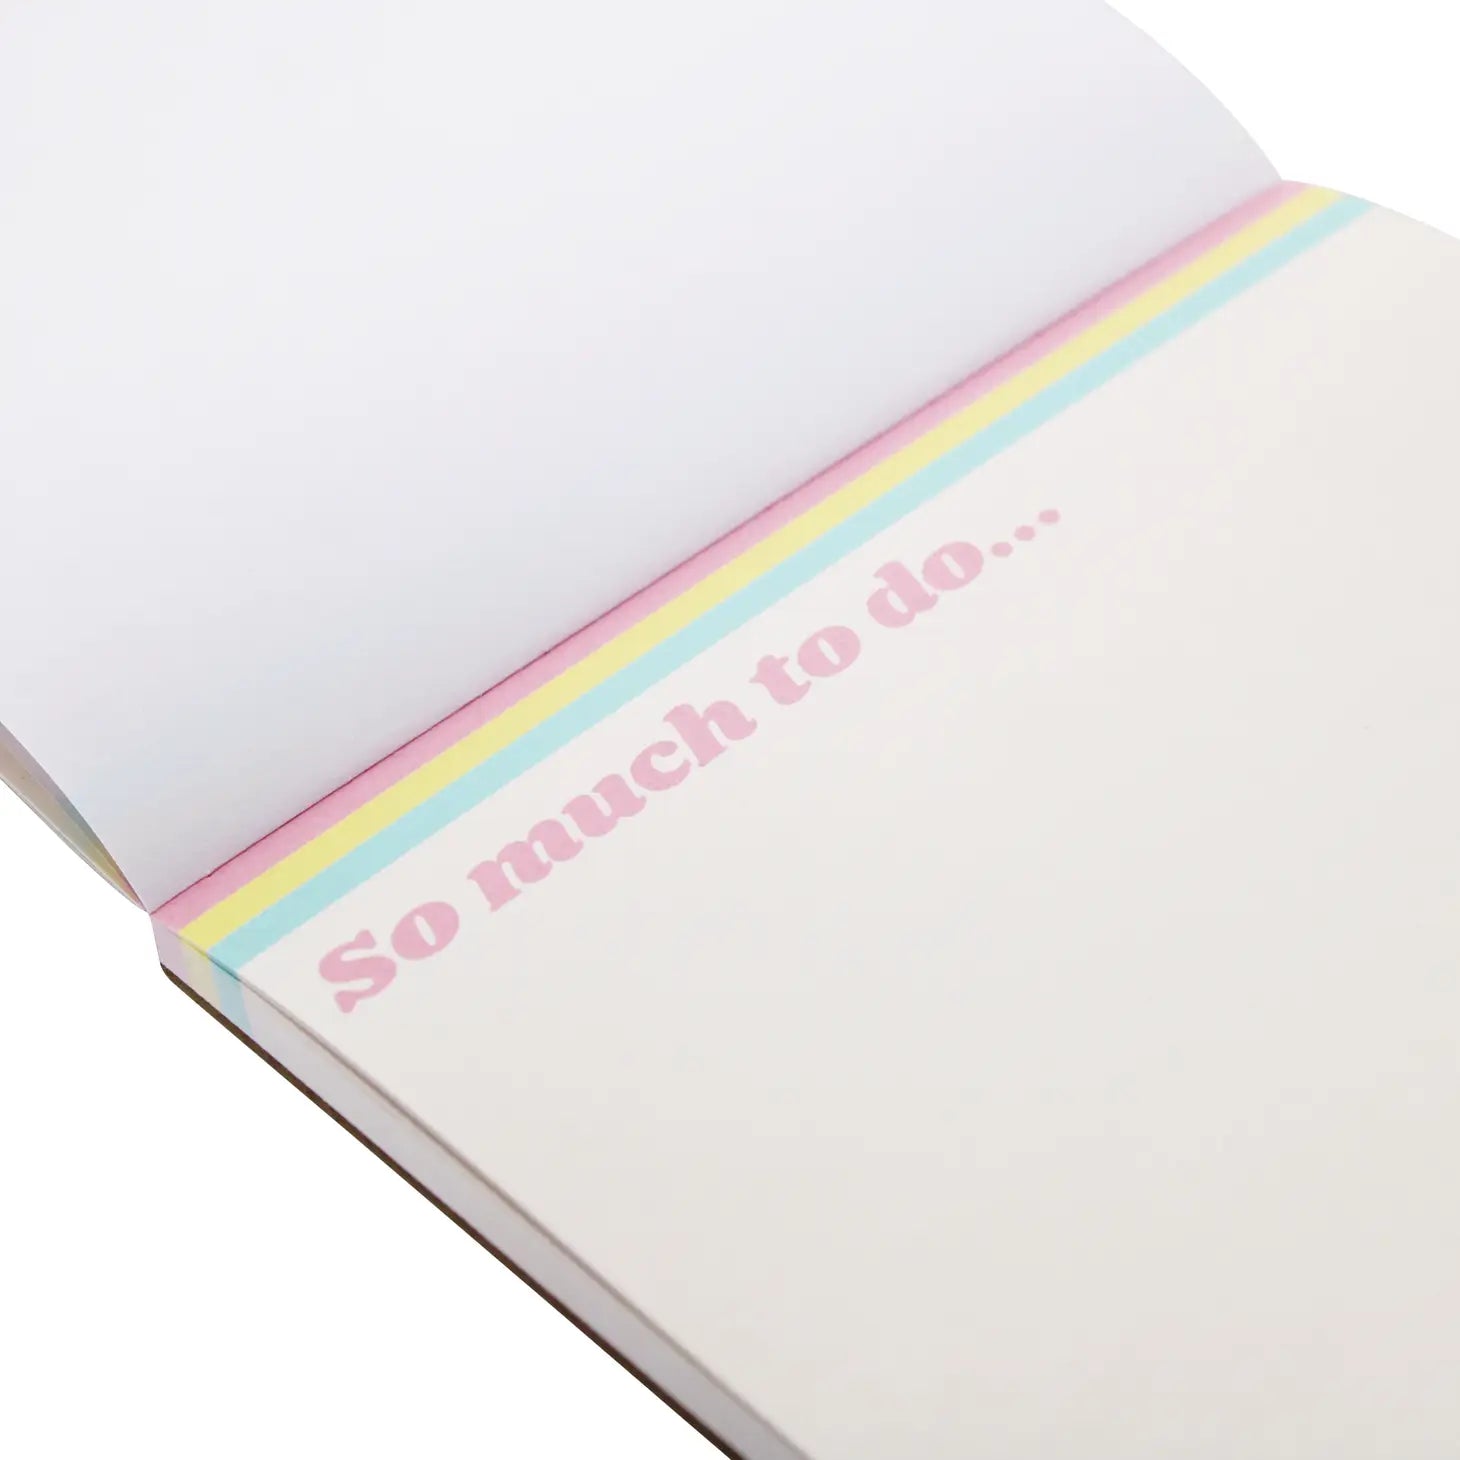 Pusheen Self Care Club Desk Pad note book